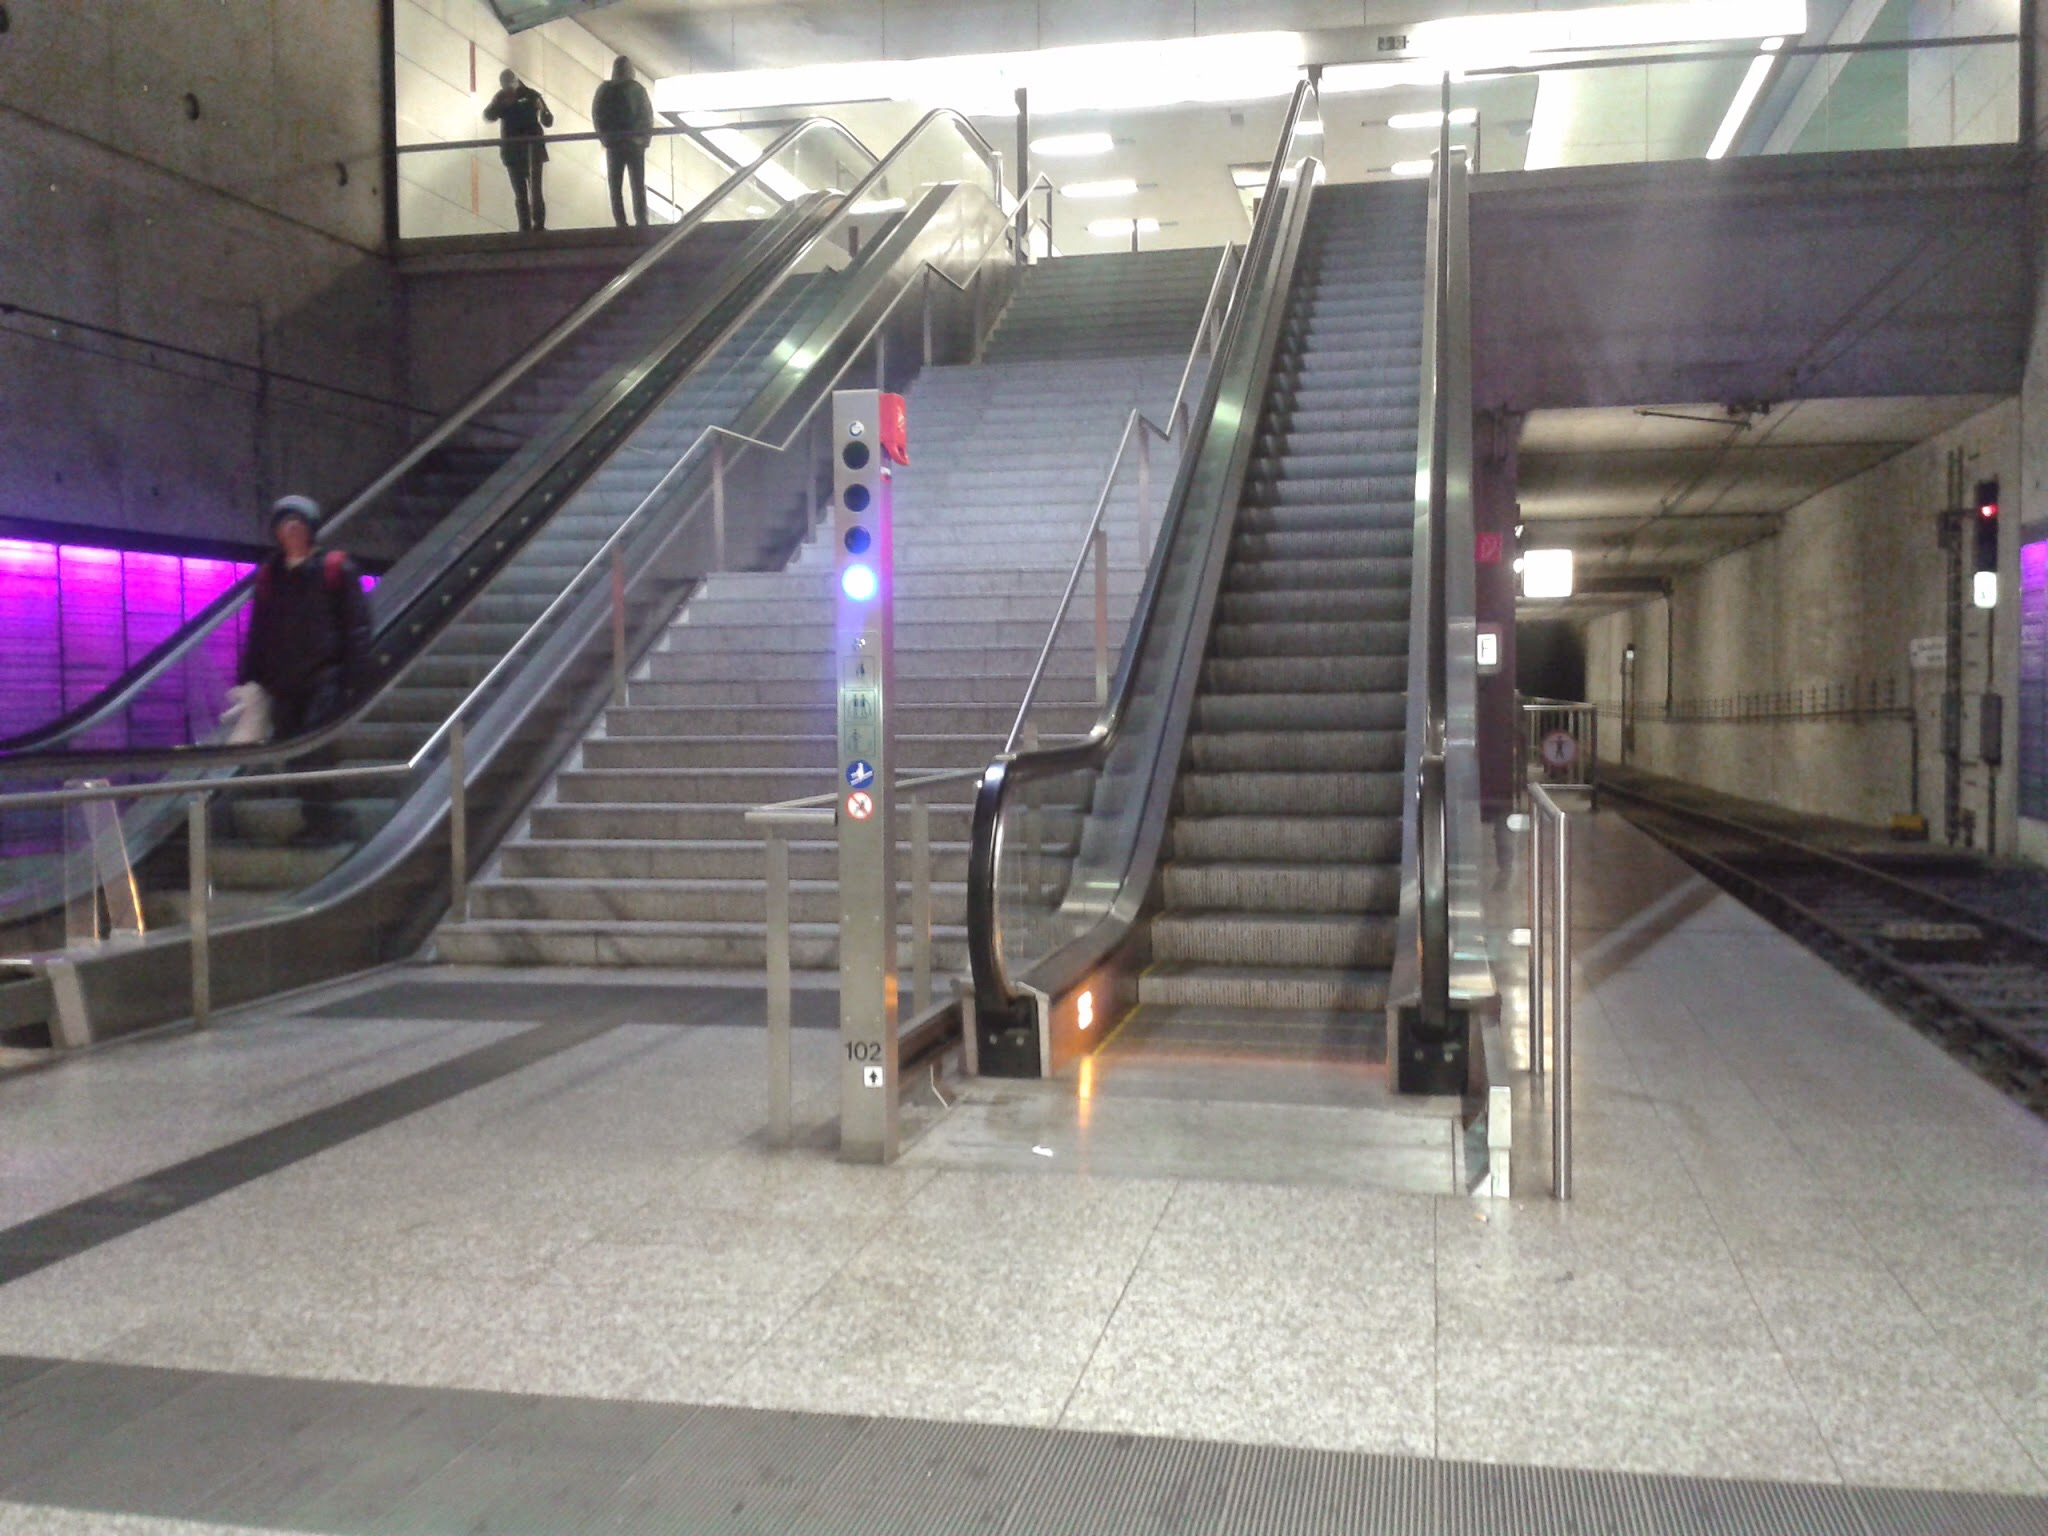 Rolltreppe bzw. Fahrtreppe einer U-Bahn-Station